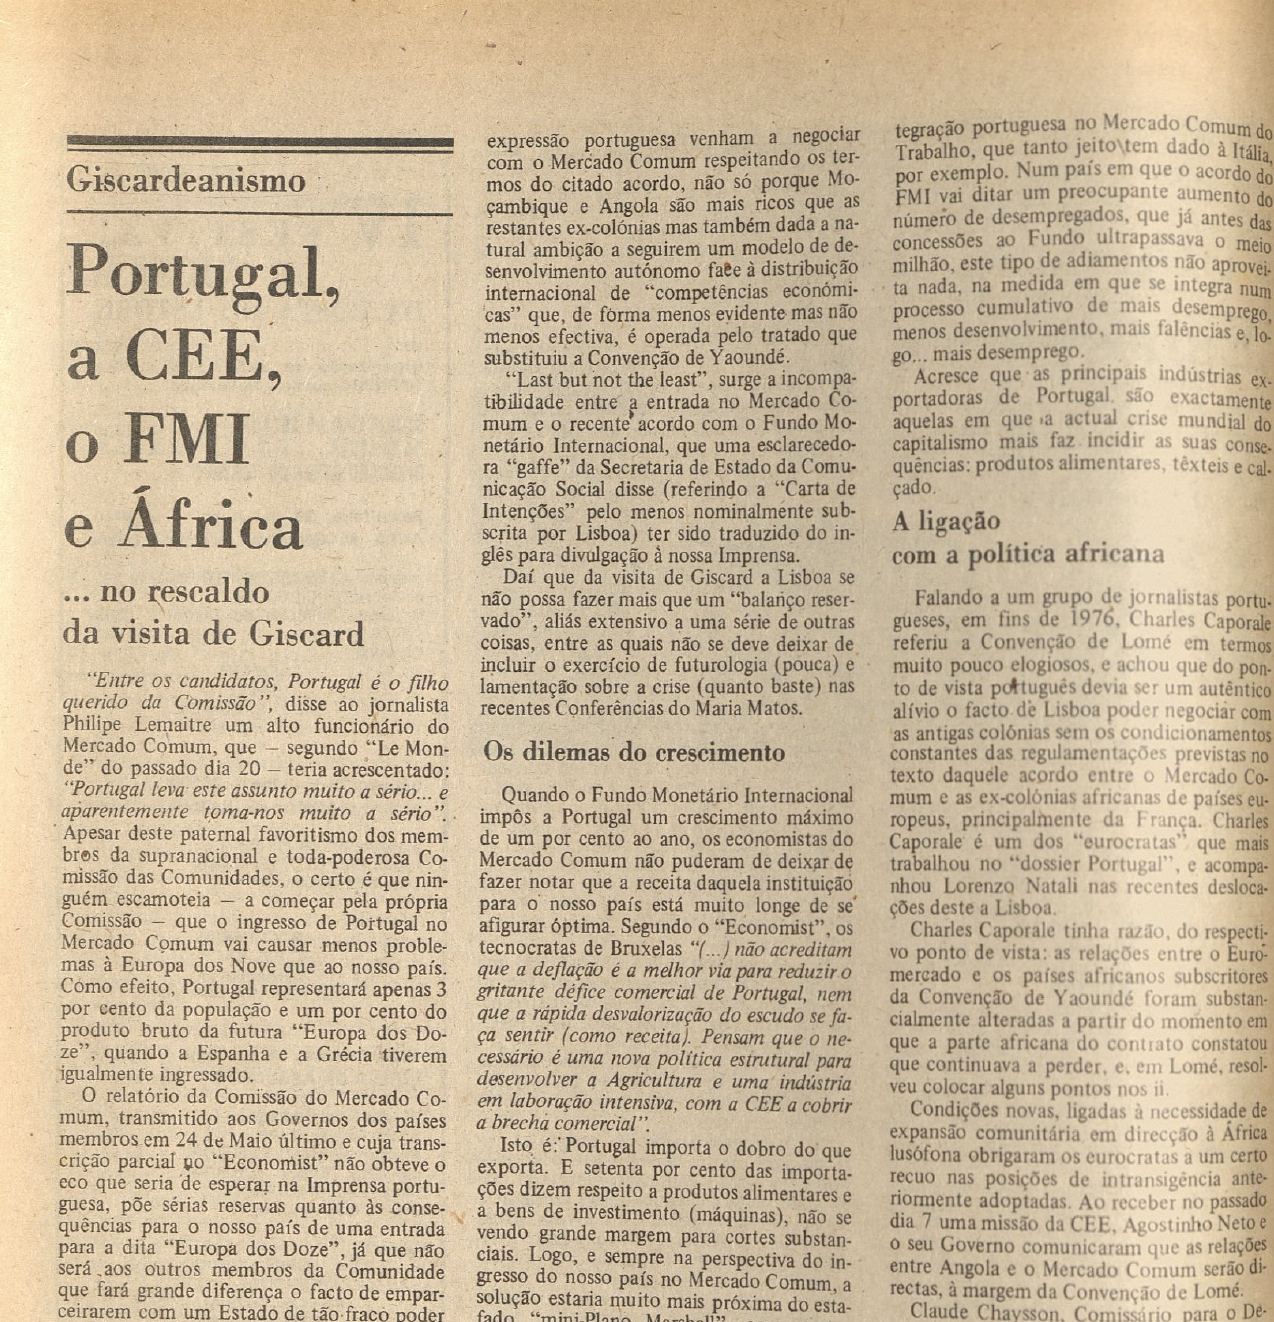 "Portugal, a CEE e o FMI"